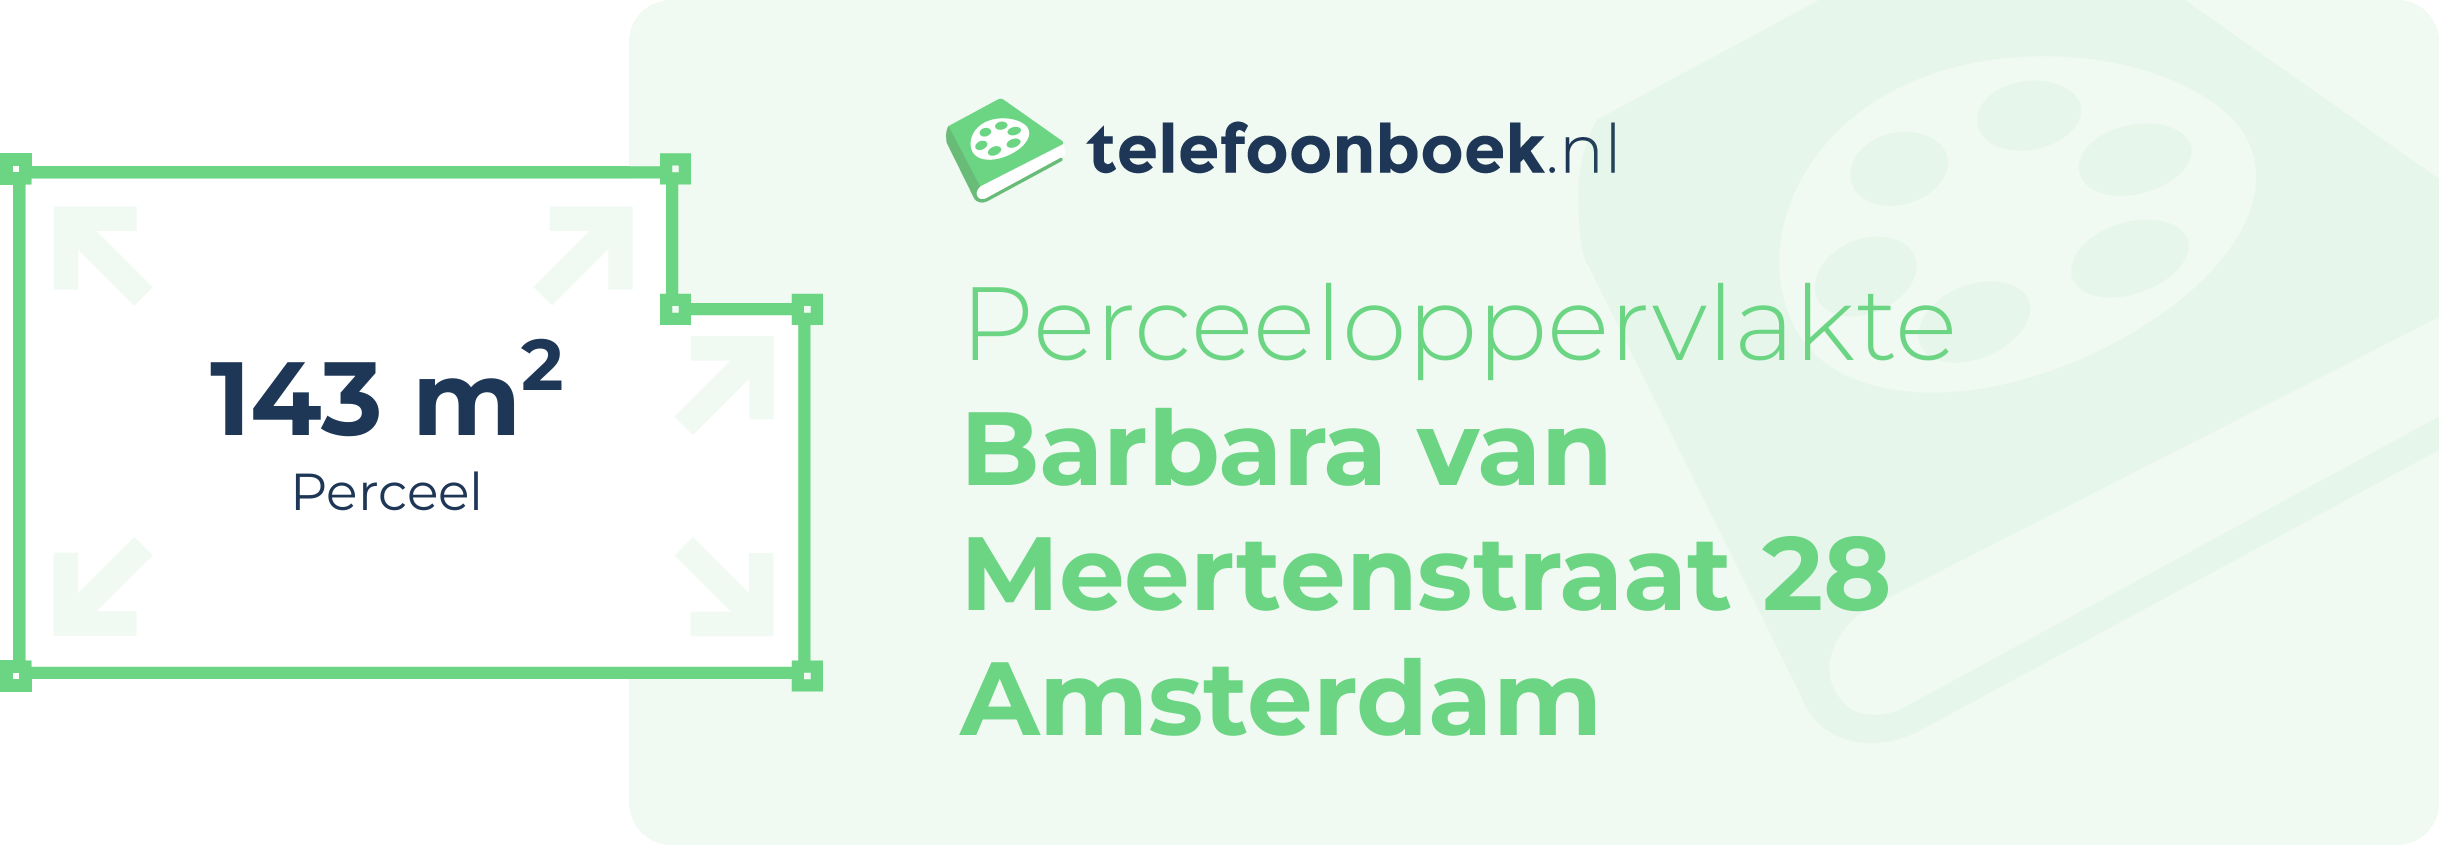 Perceeloppervlakte Barbara Van Meertenstraat 28 Amsterdam